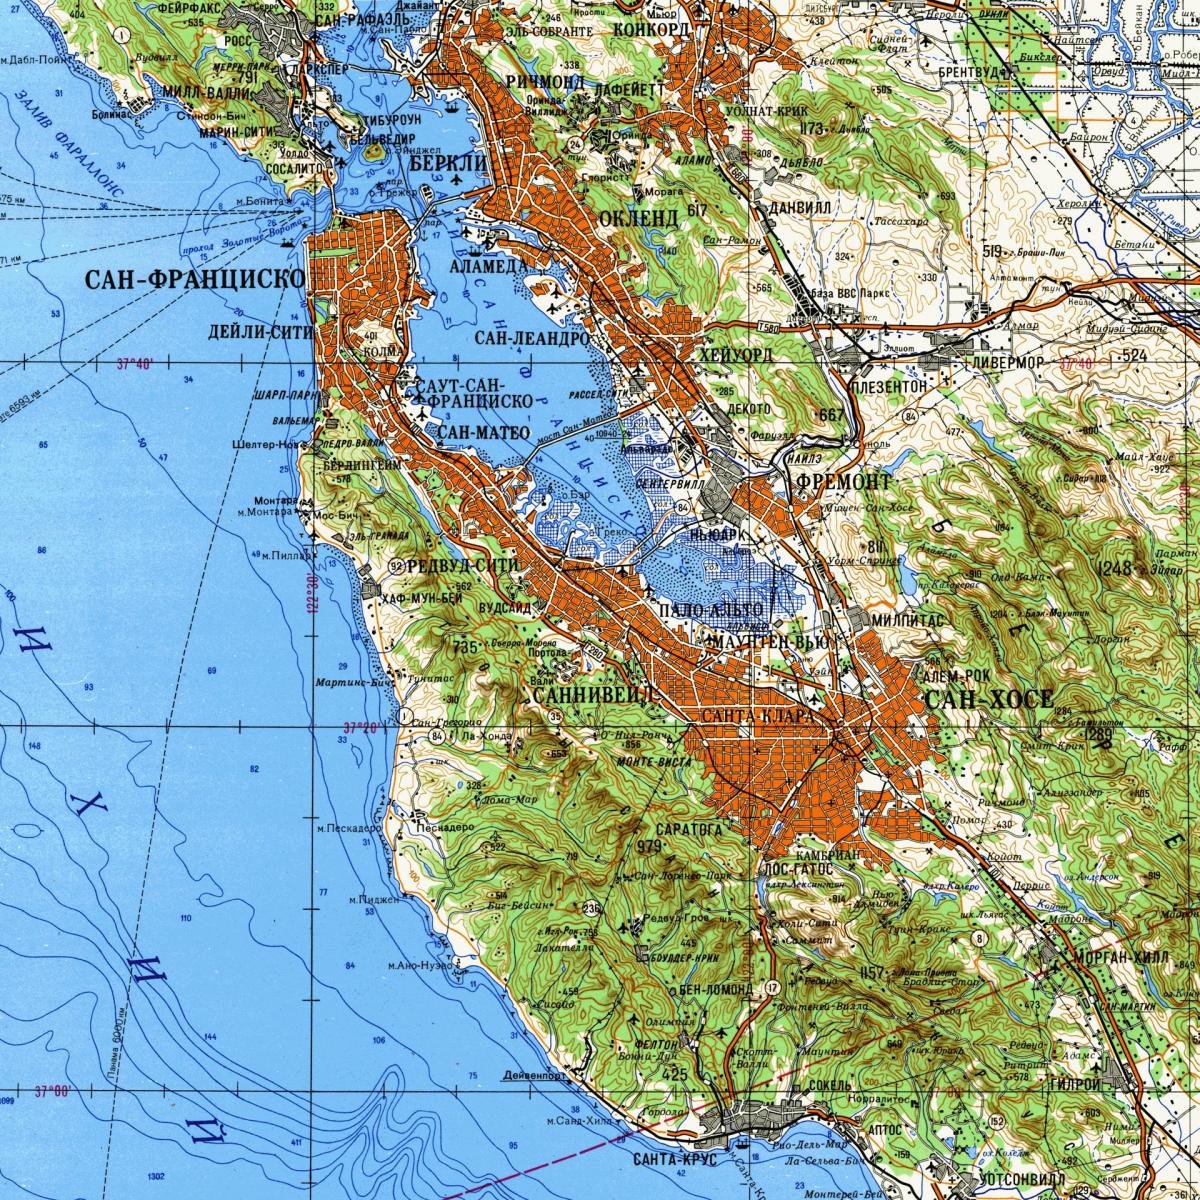 Մարզի Սան Ֆրանցիսկոյի մասշտաբի տեղագրական քարտեզի վրա